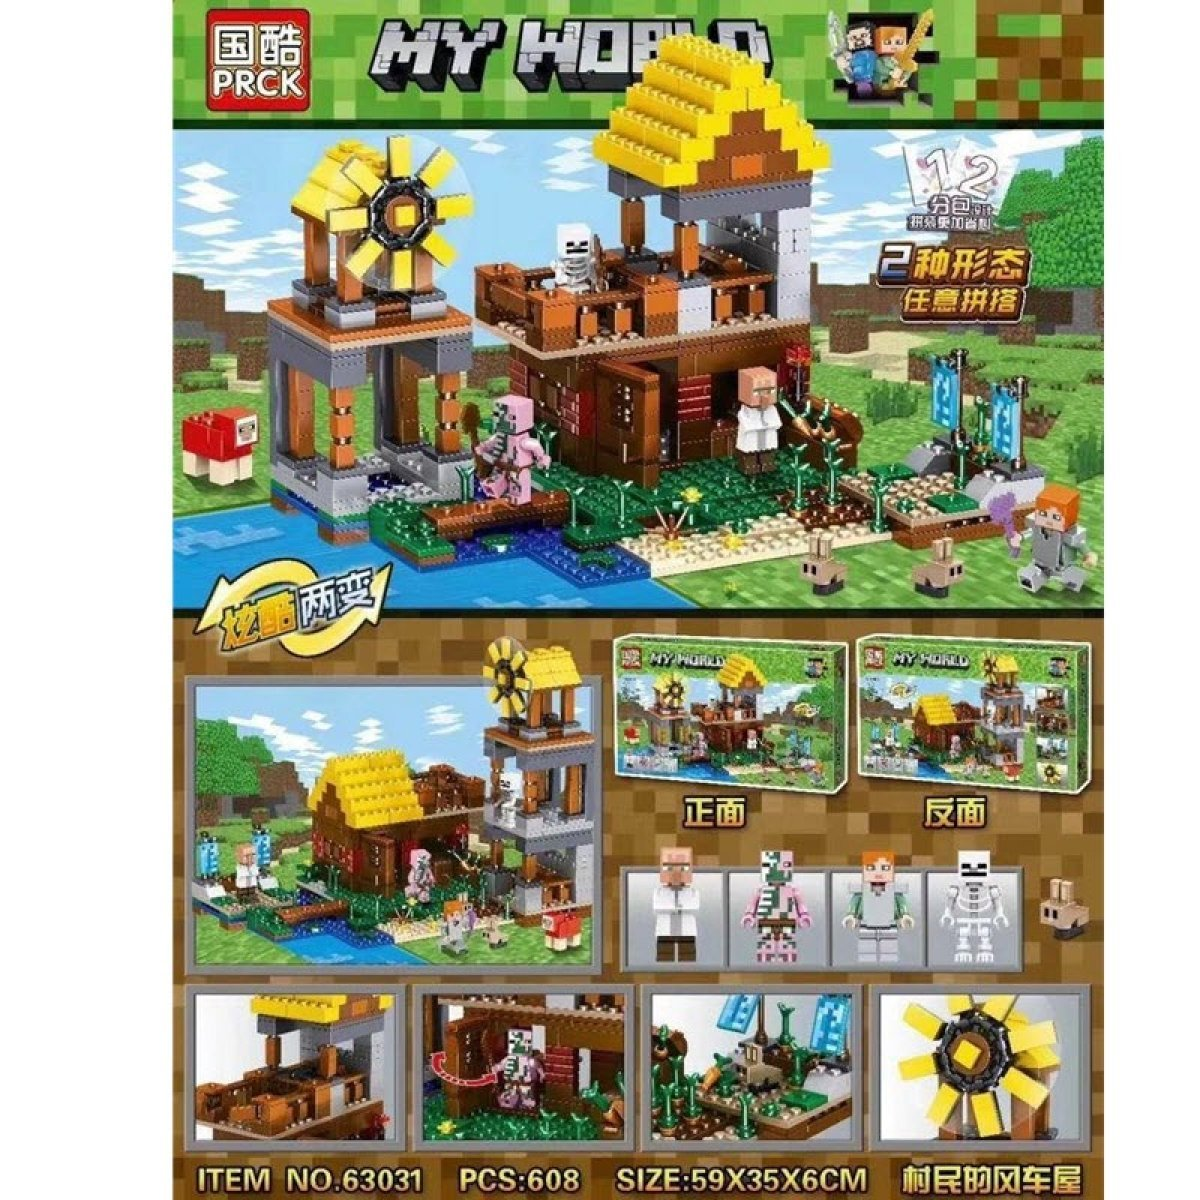 63031 Конструктор PRCK Minecraft "Домик фермера с мельницей", 608 деталей, Аналог Лего Майнкрафт 21154 Подробн